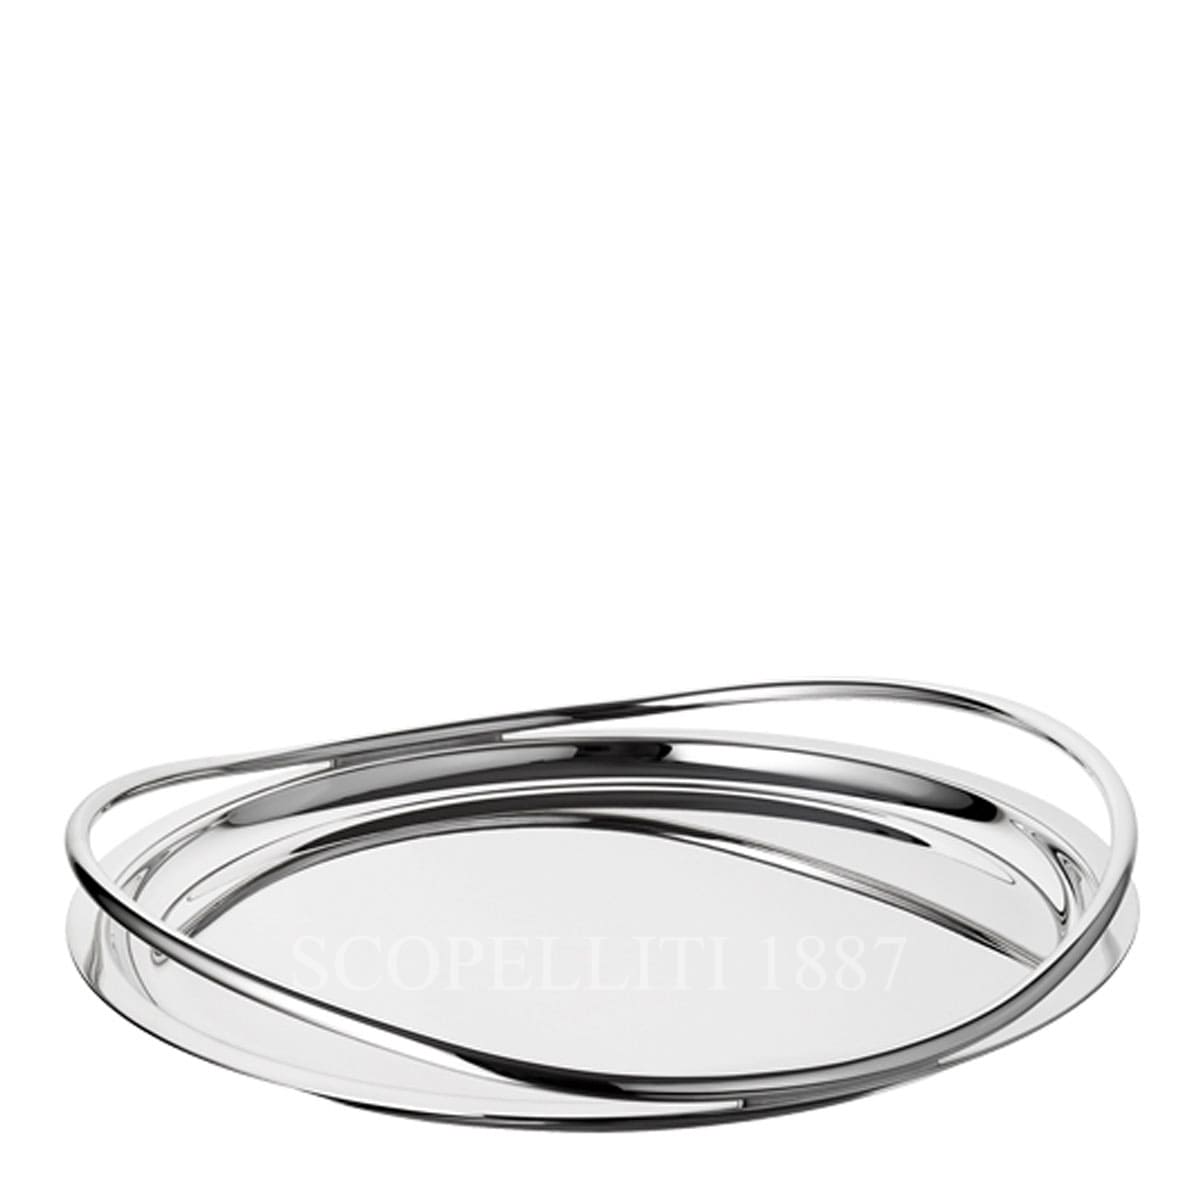 Christofle Vertigo Silver Plated Round Serving Tray – Large